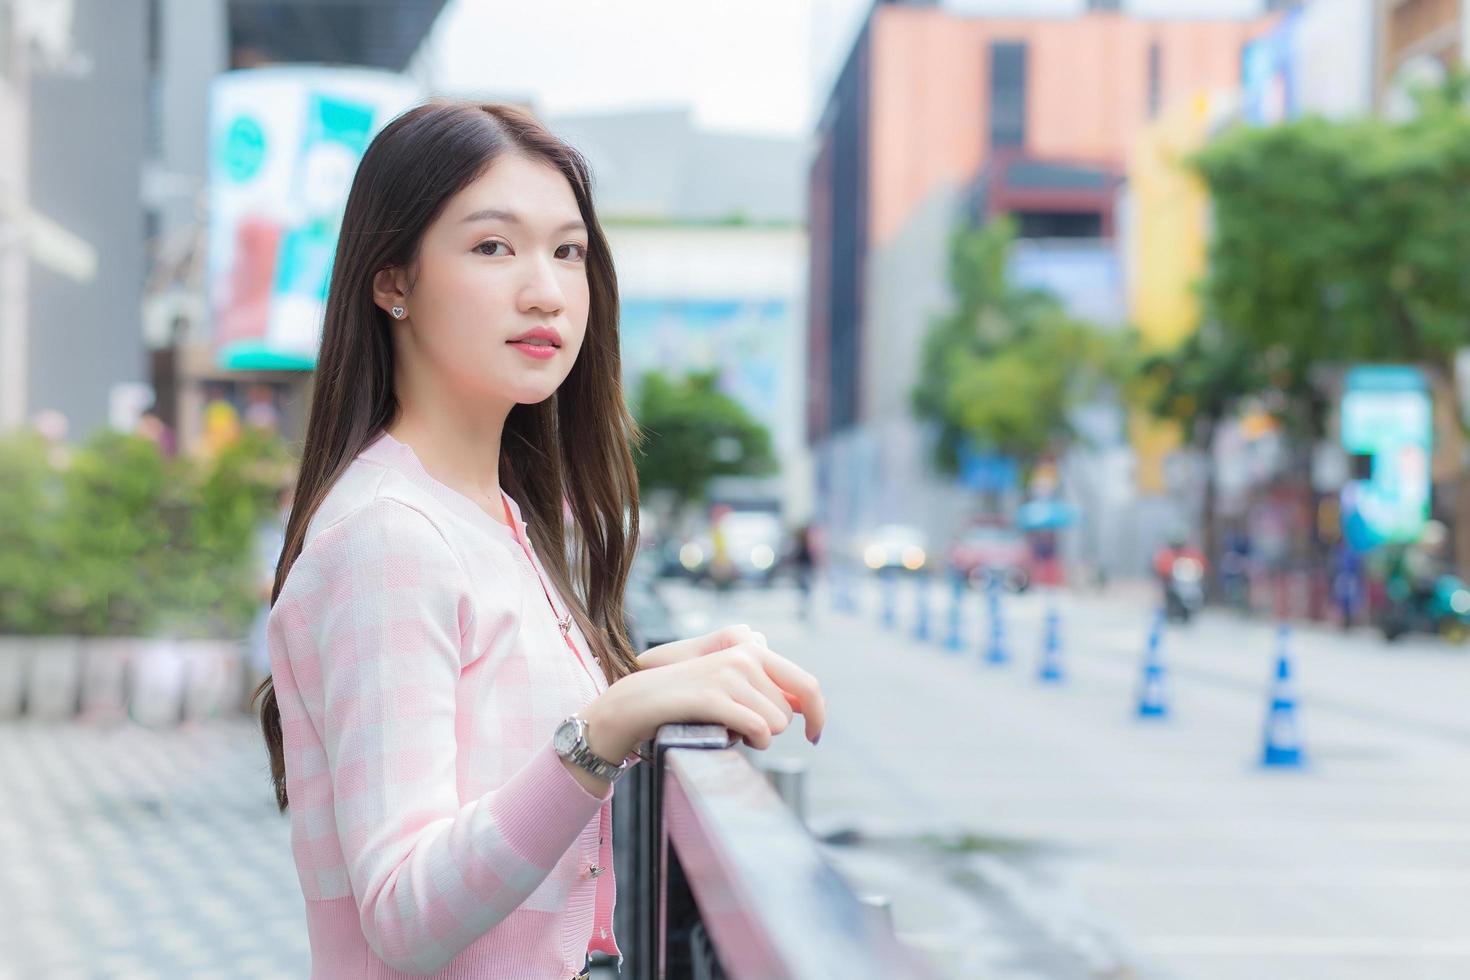 schöne asiatische frau in einem rosa-weiß gestreiften mantel steht im städtischen freien mit der stadt und der straße als hintergrund. foto